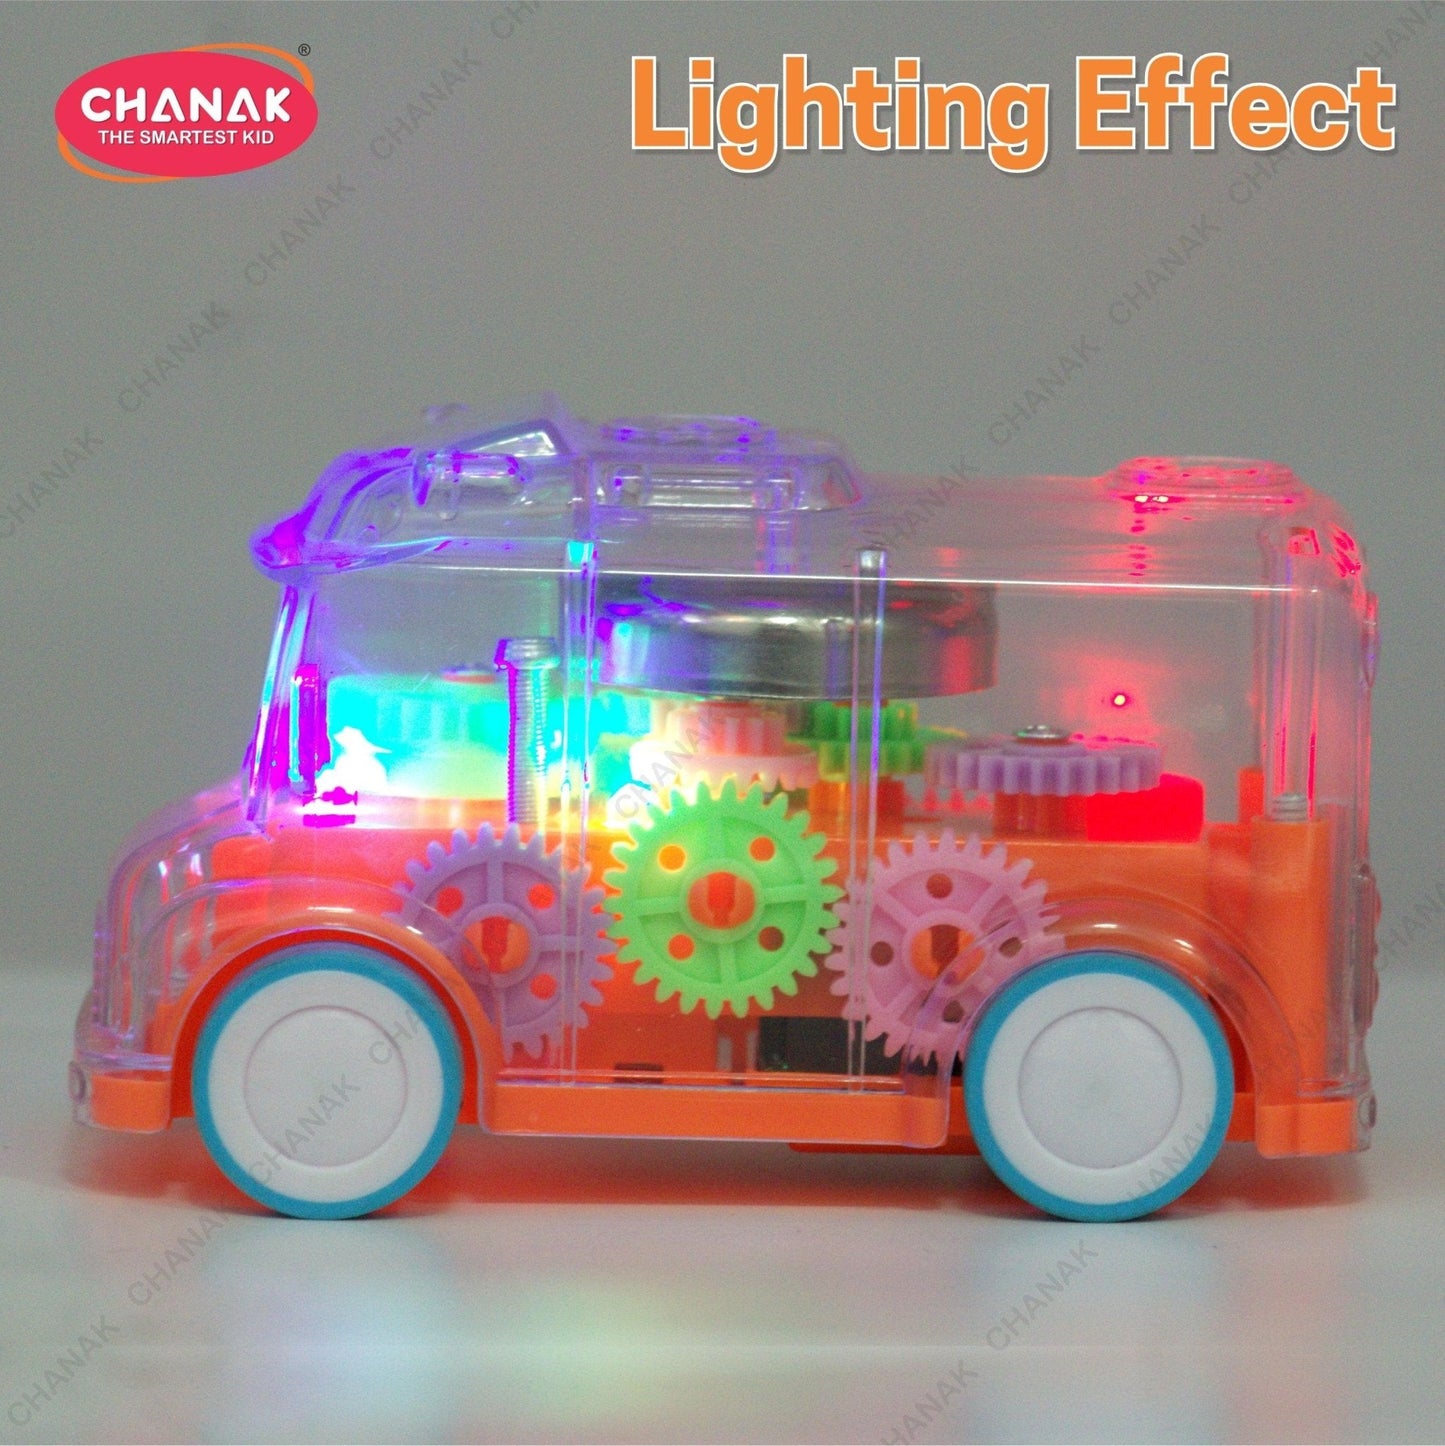 Chanak Transparent Gear Bus for Kids (Orange) - chanak